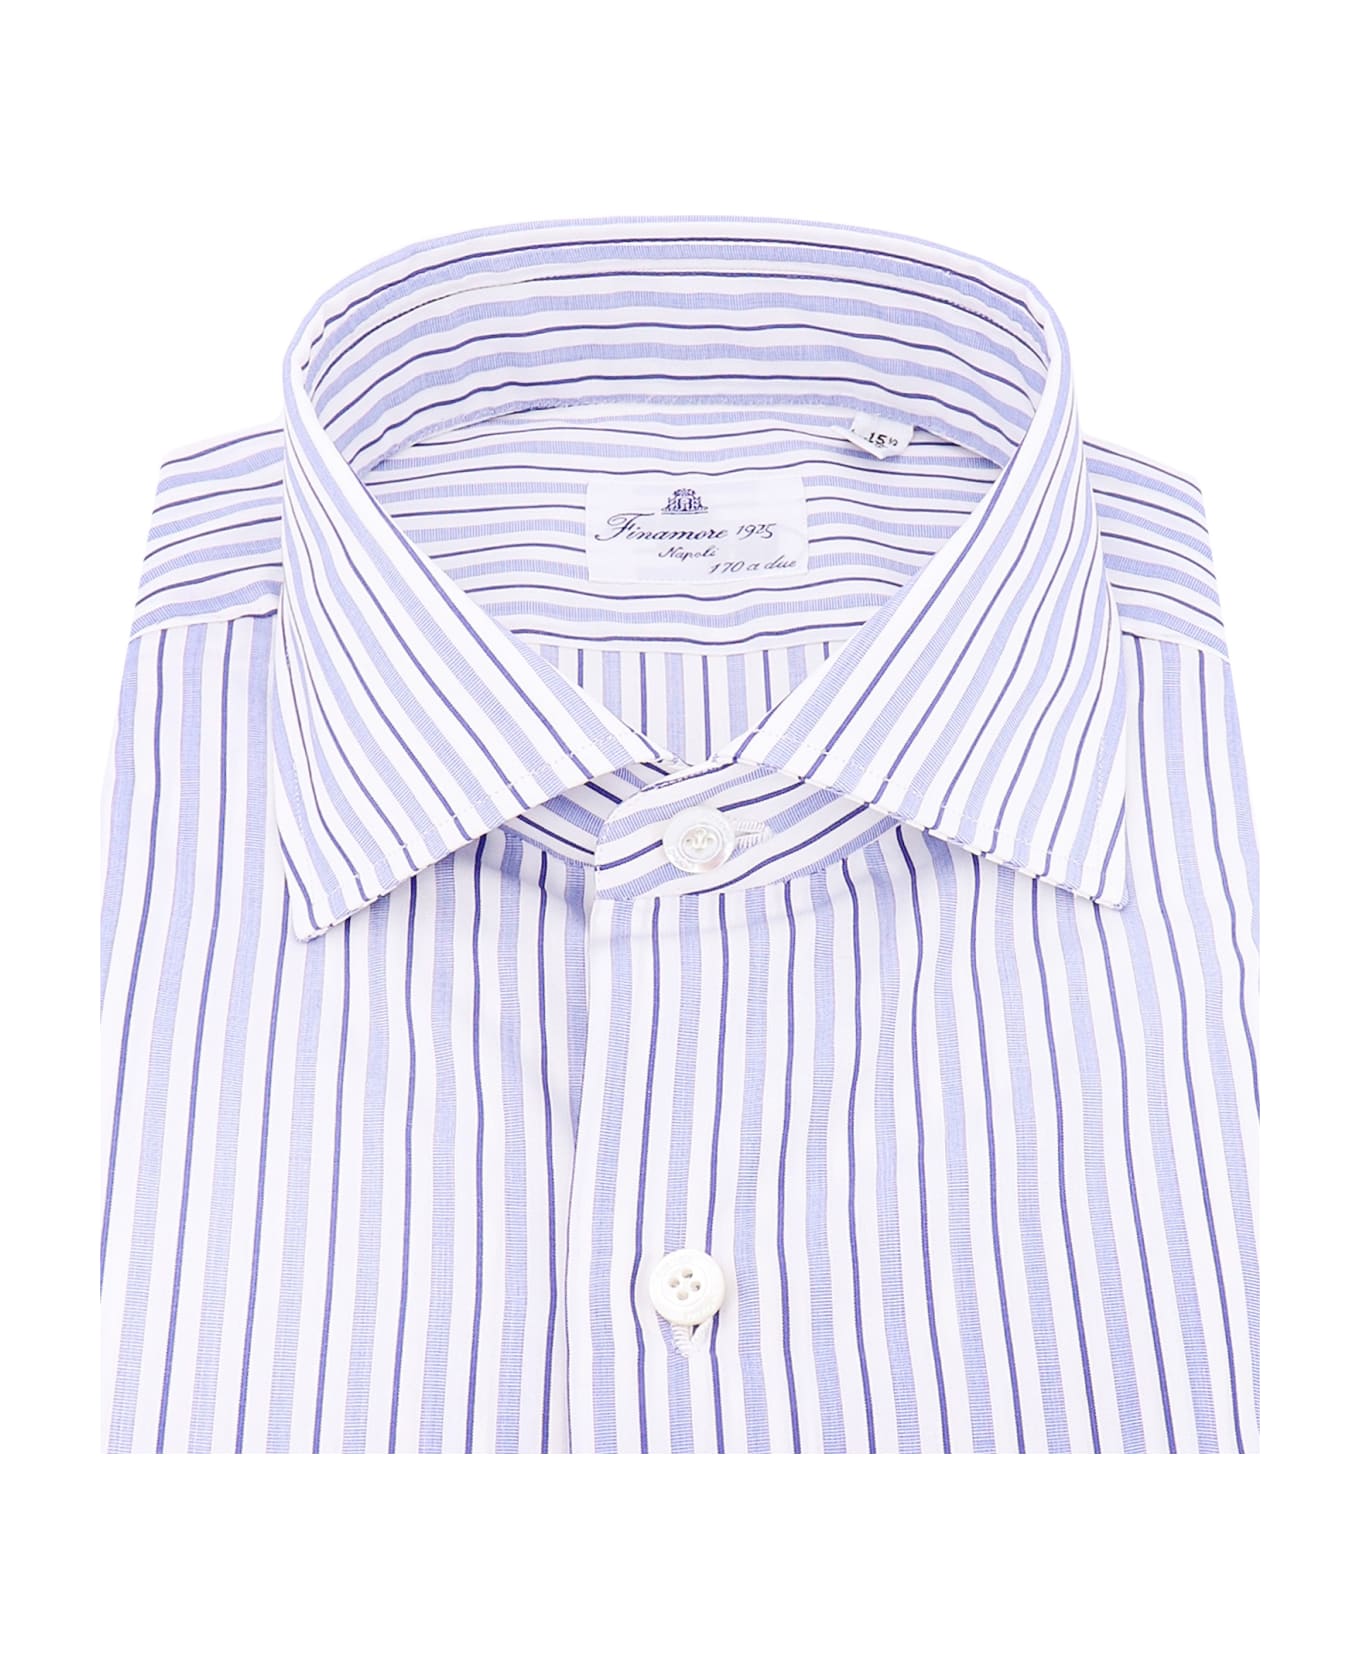 Finamore Shirt - White シャツ